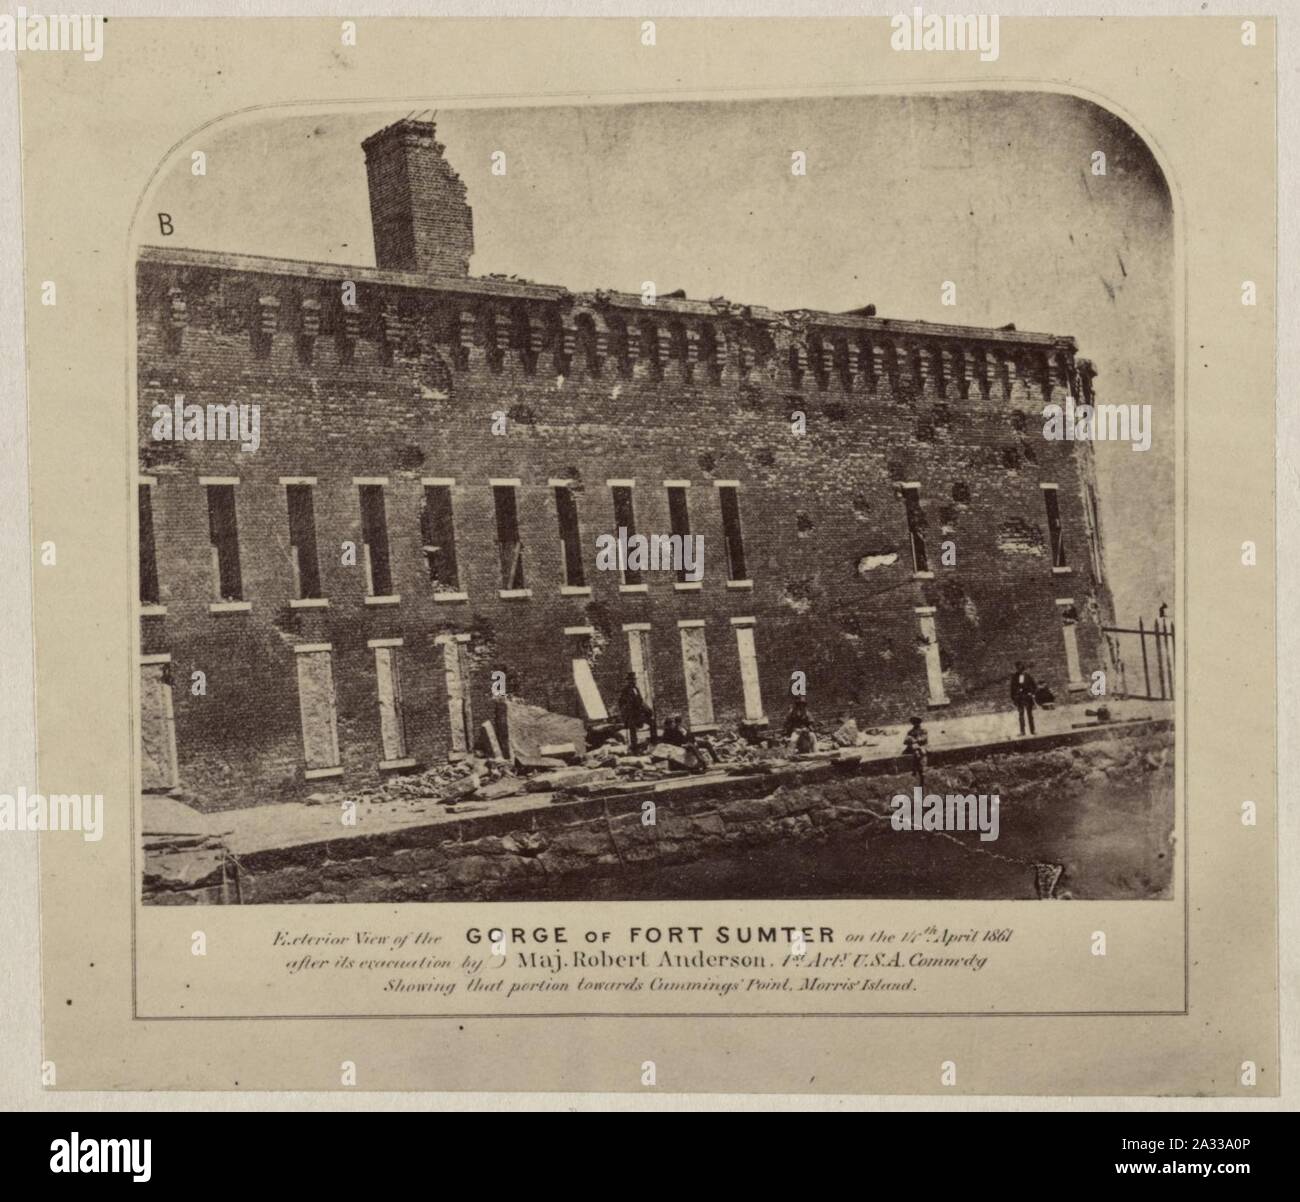 Vista esterna della gola di Fort Sumter il 14 aprile 1861 dopo la sua evacuazione mediante il Mag. Robert Anderson Arty 1a. U.S.A. Commdg mostra che la porzione verso Cummings' Point, Morris' Foto Stock